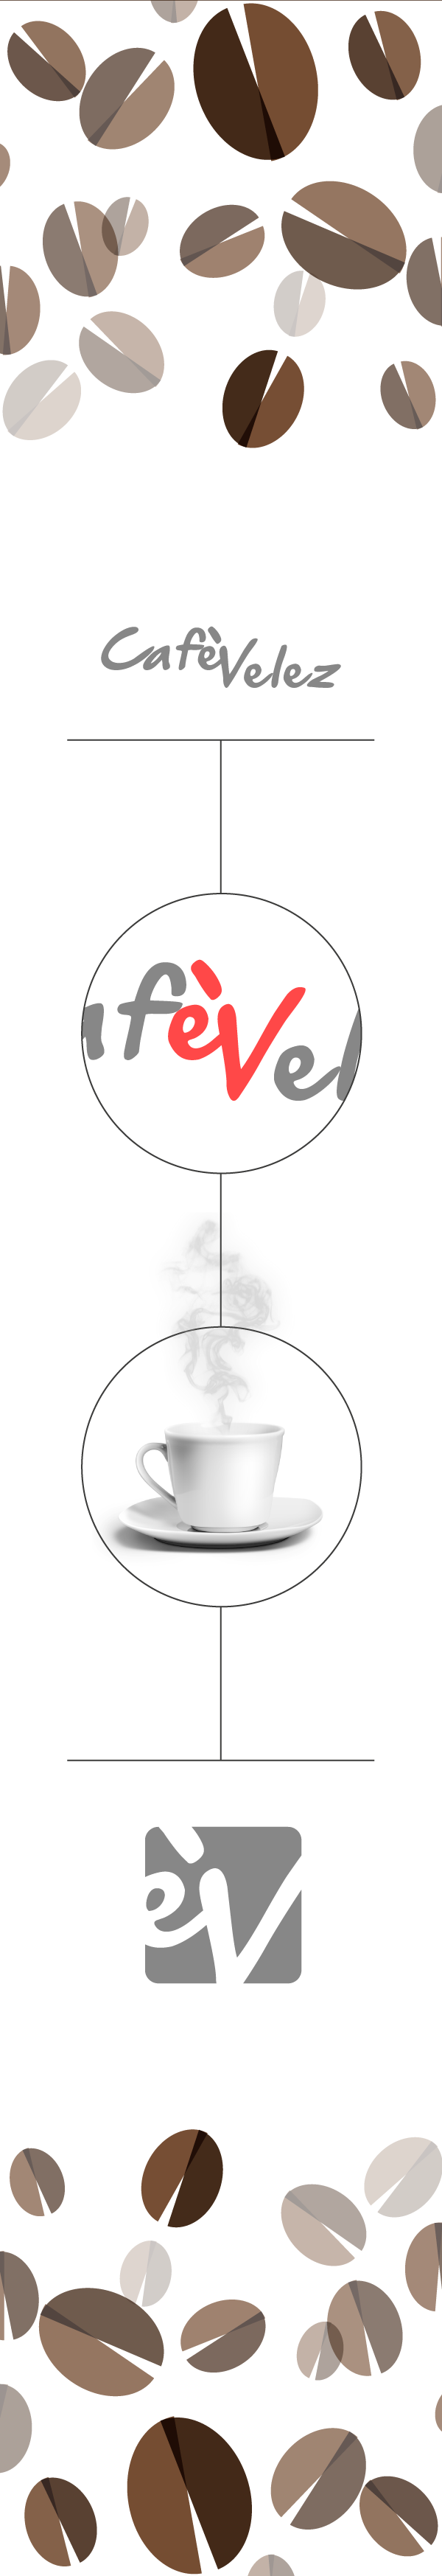 cafe caffe Coffee brand logo Logo Design